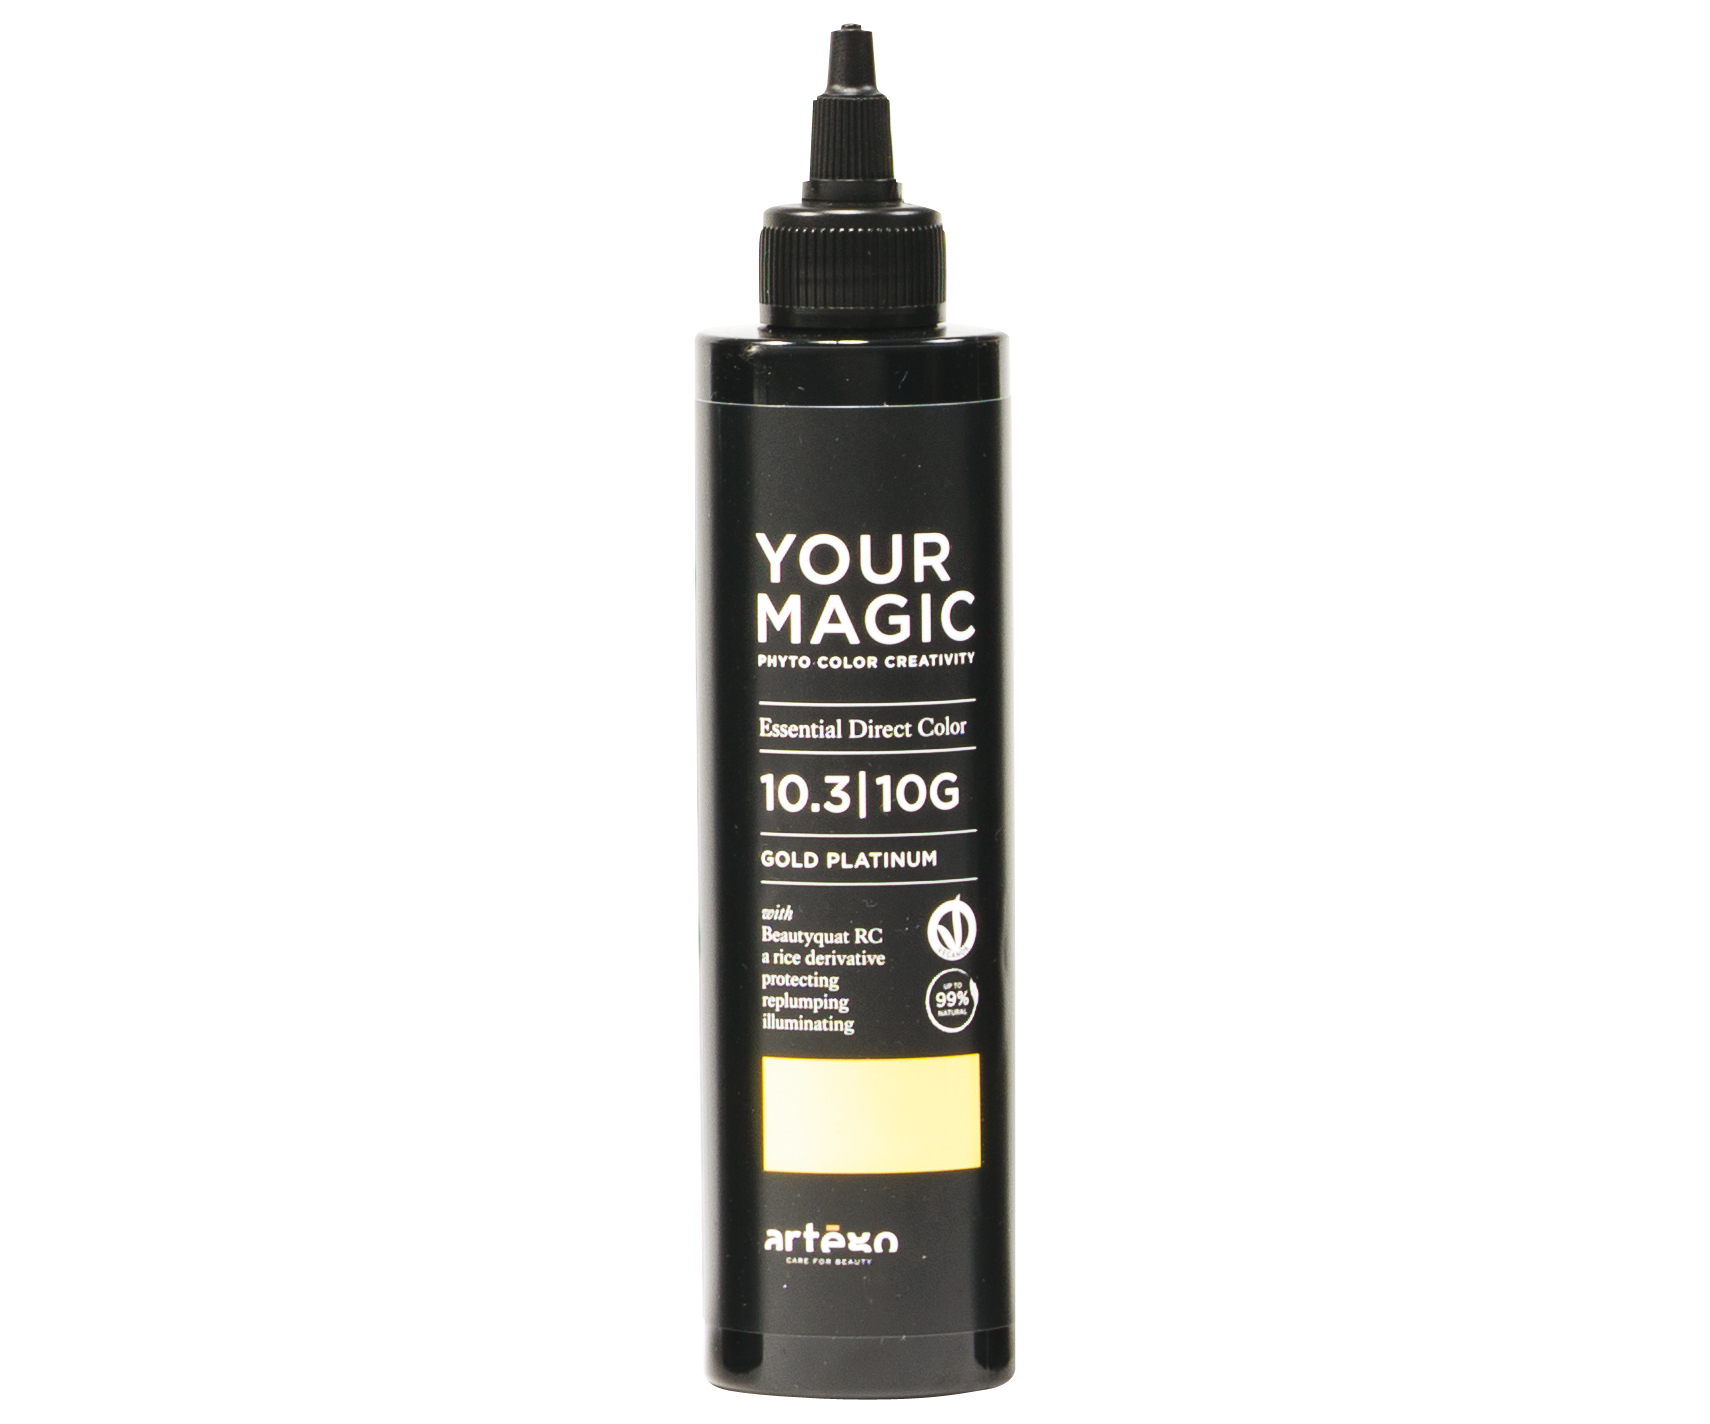 Tónující pigmenty na vlasy Artégo Your Magic 10.3 | 10G - 200 ml, platinově zlatá (0165255) + DÁREK ZDARMA